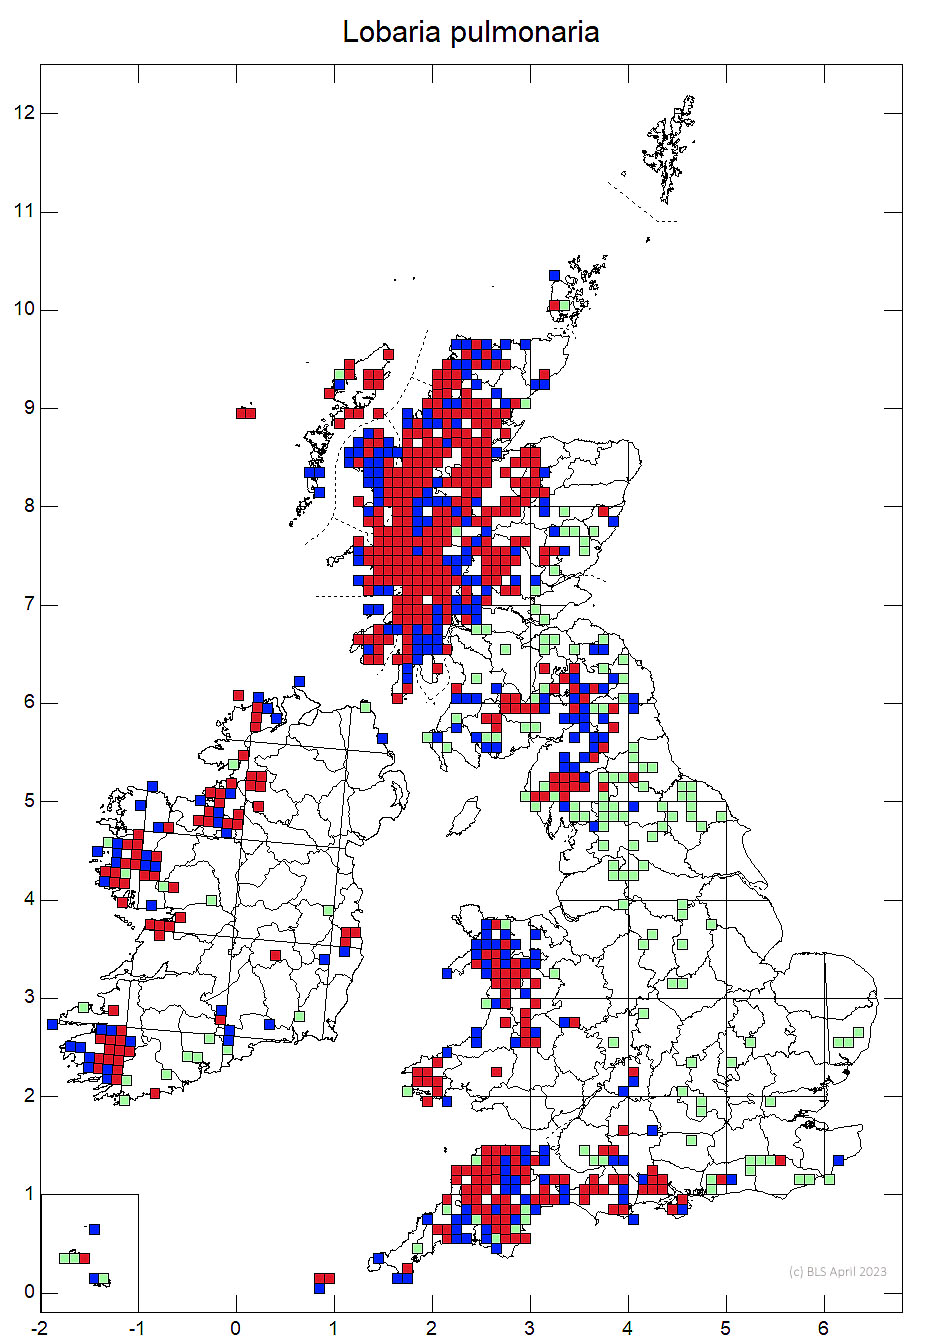 Lobaria pulmonaria 10km sq distribution - © British Lichen Society